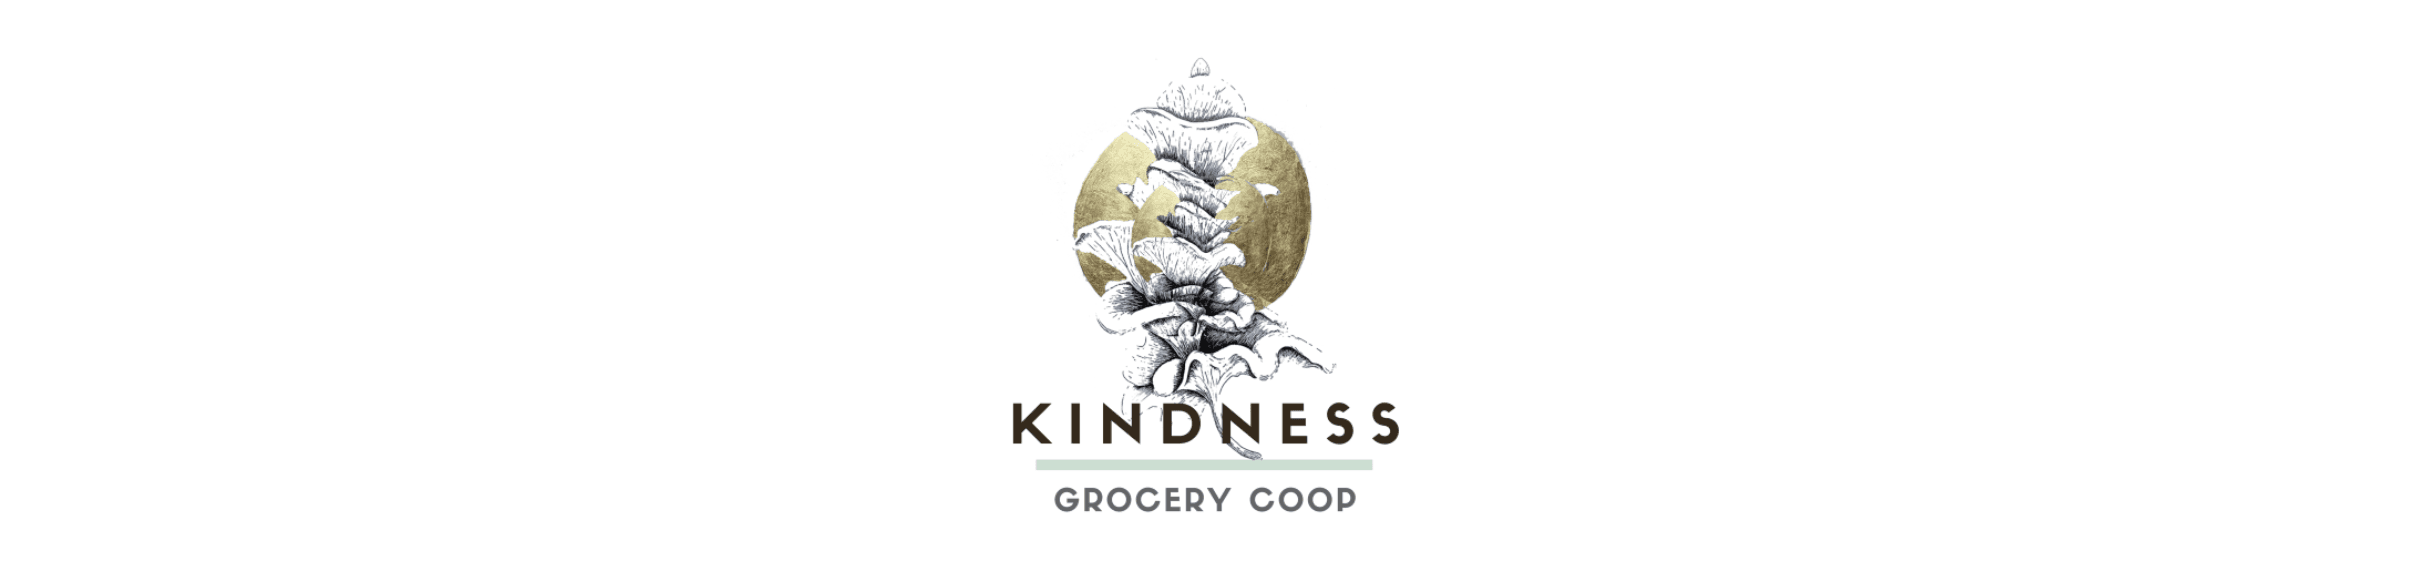 Kindnessgrocerycoop2021 banner